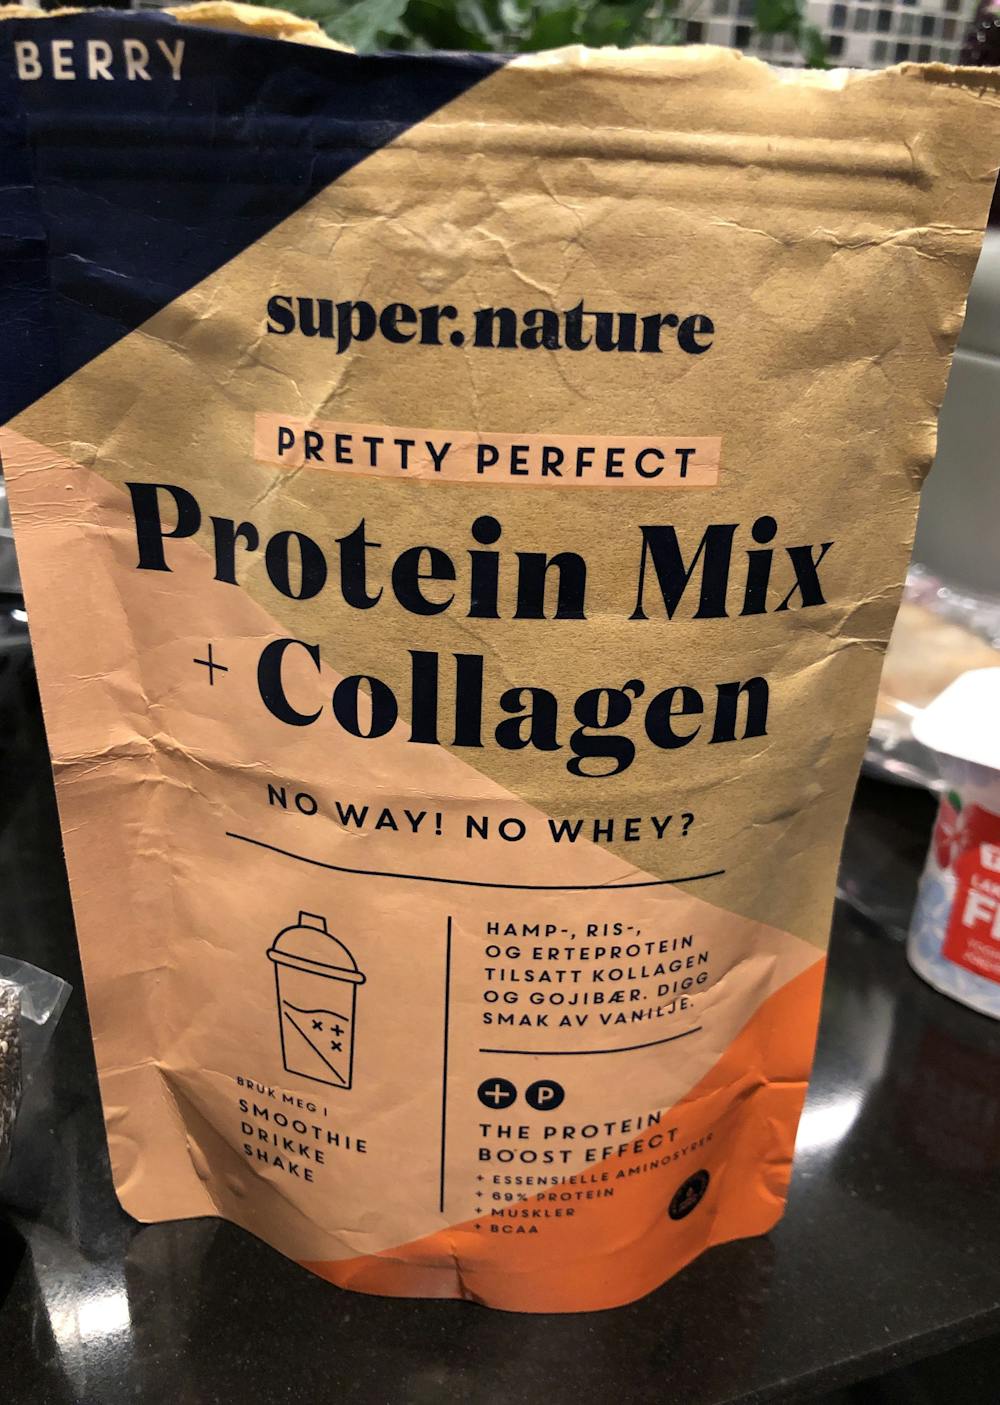 Protein mix + collagen, Super.nature